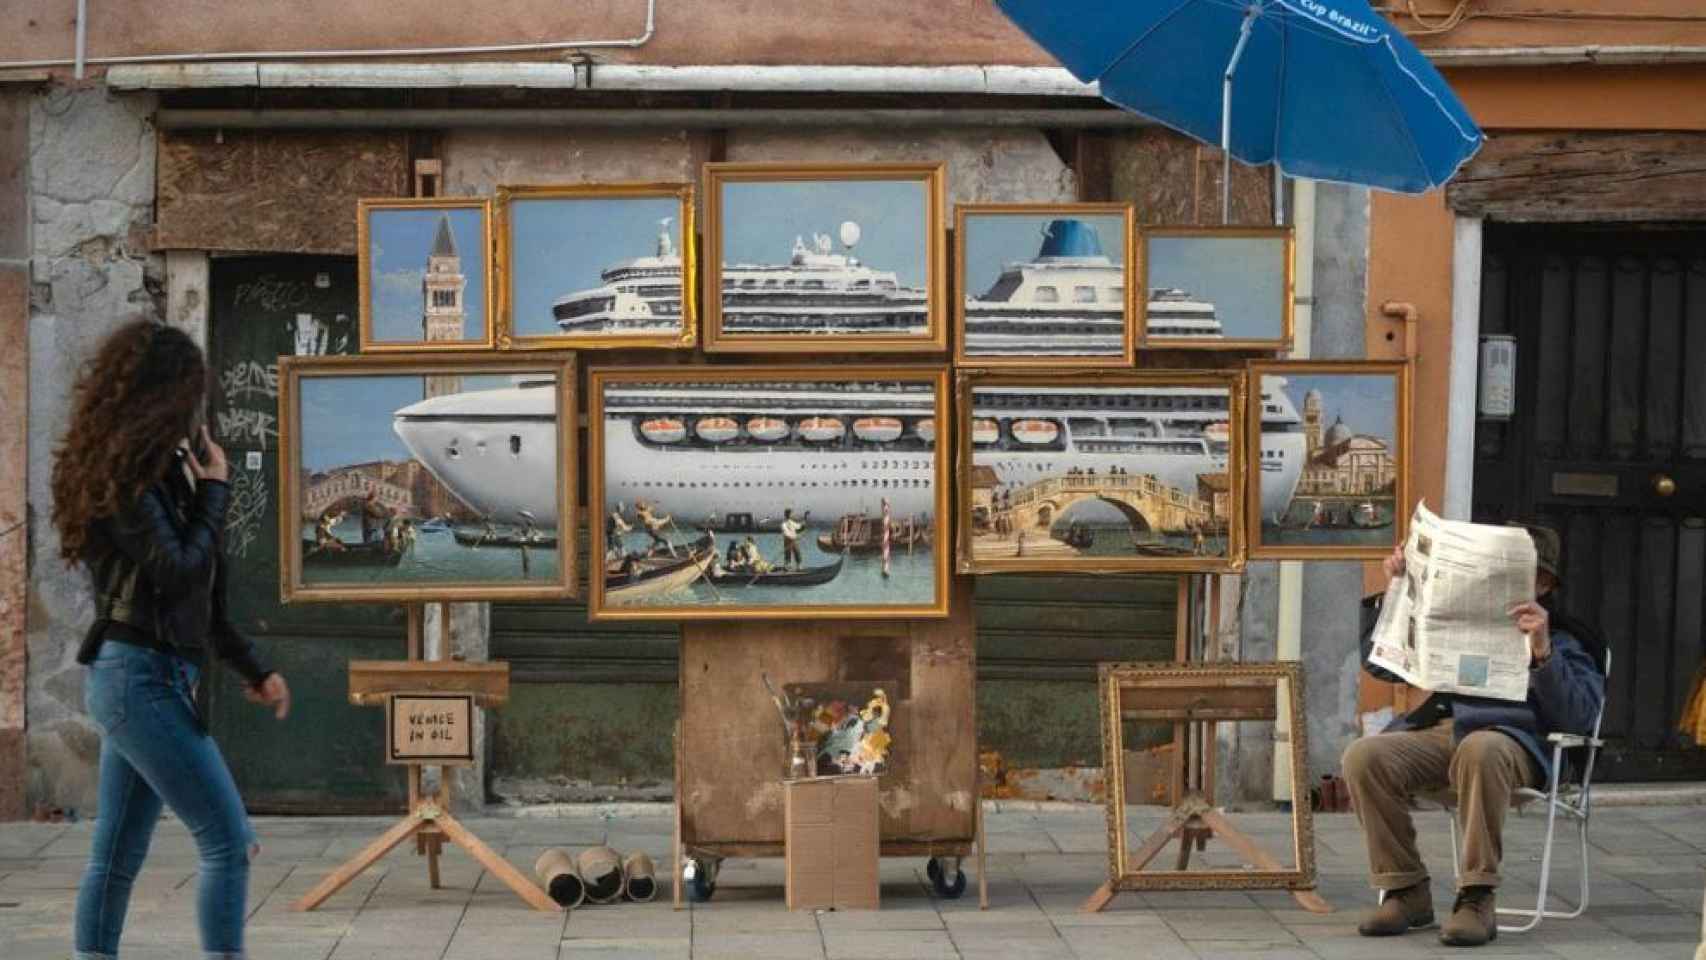 La obra crítica de Banksy en Venecia.